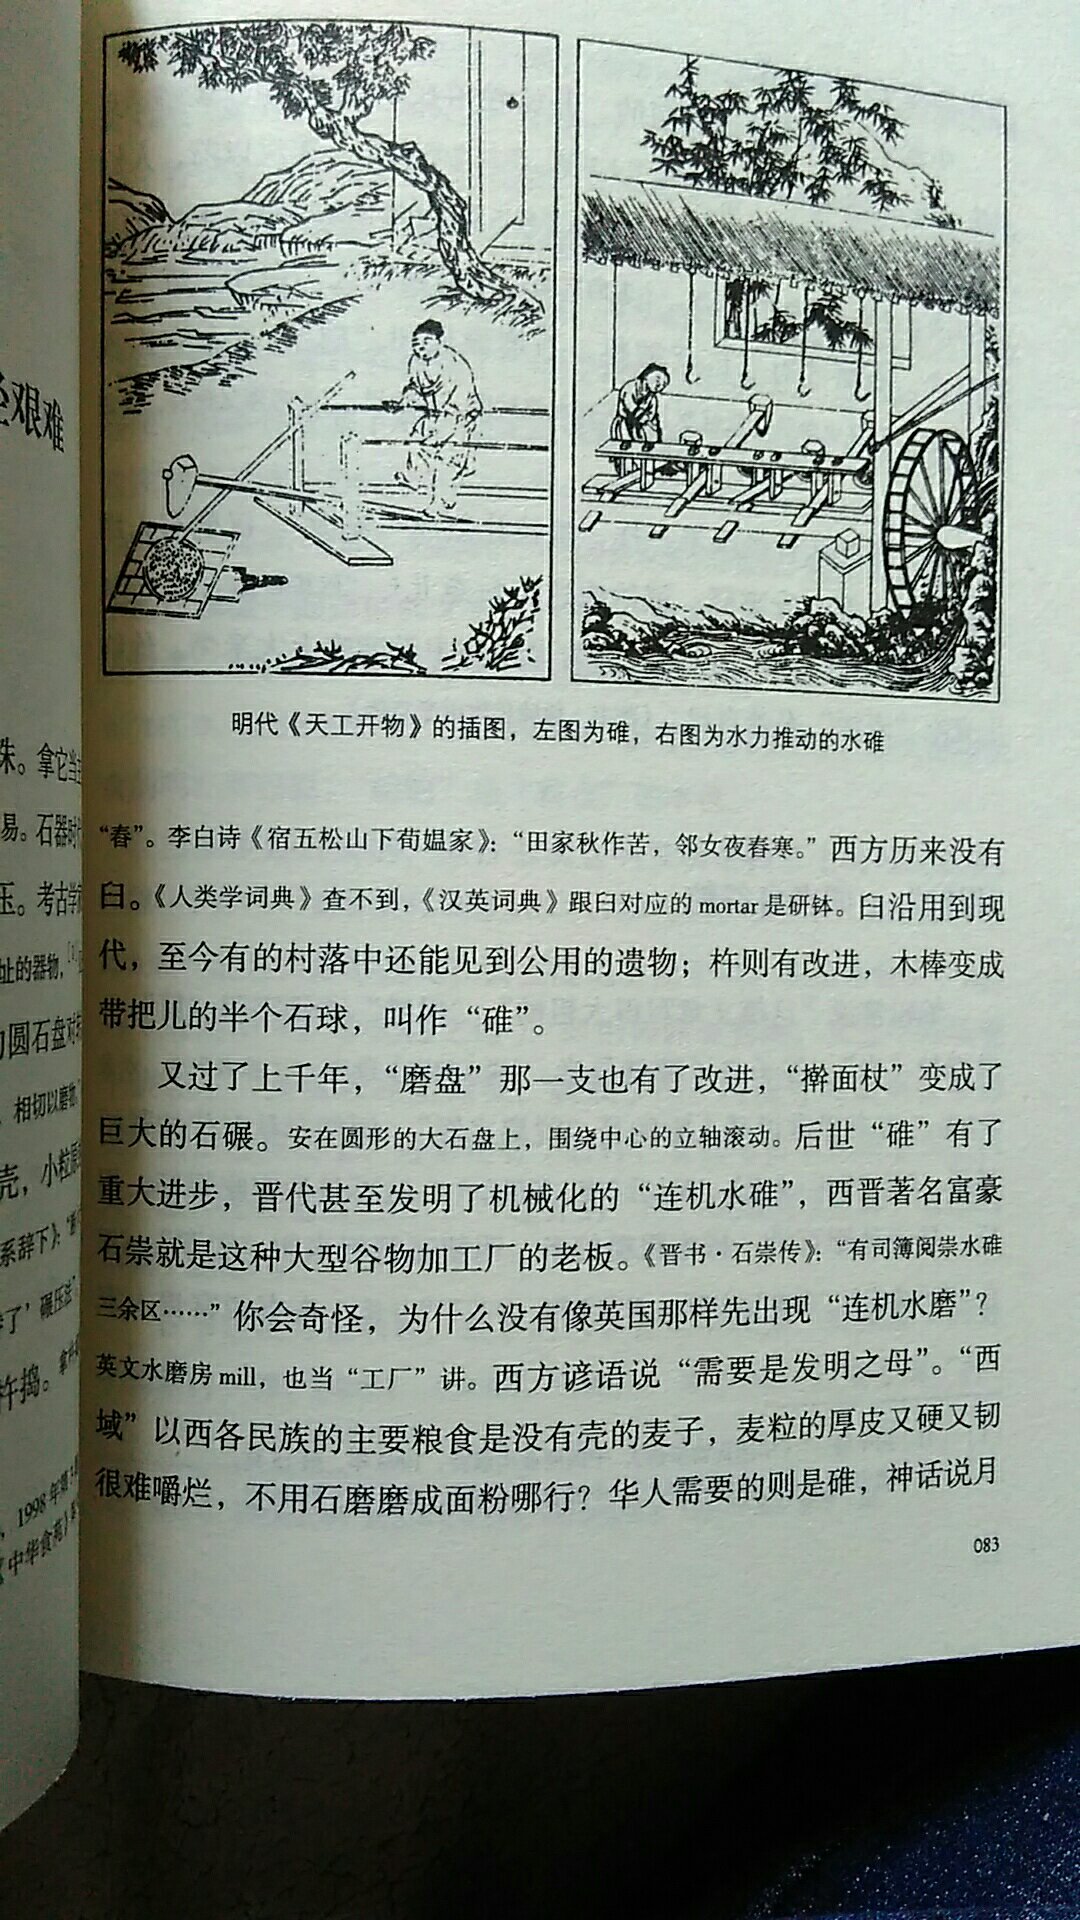 这确实是一本好书，讲中华饮食，更讲中华文化。探究中华饮食之道的高先生，解答了一个个饮食文化疑问。正文茅注释用小字，阅读方便，继承传统。